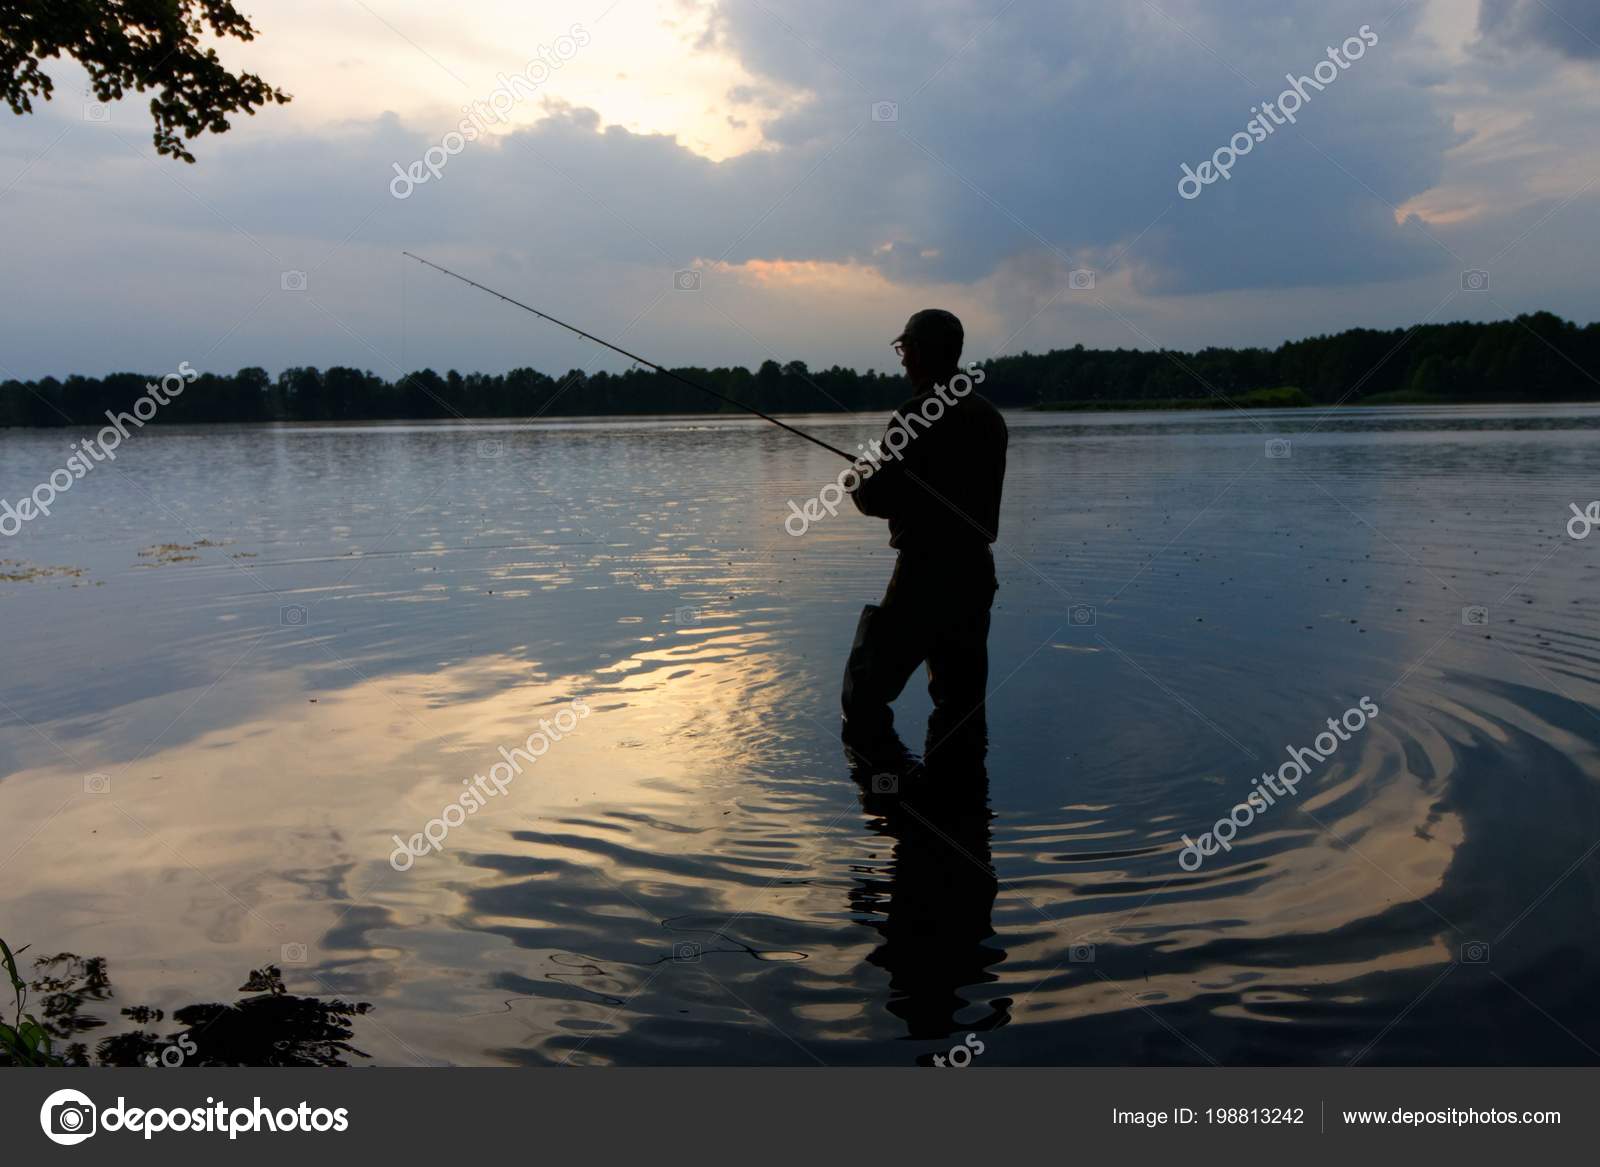 Рыбак Стоя Озере Ловить Рыбу Время Дождя — Стоковое фото ...